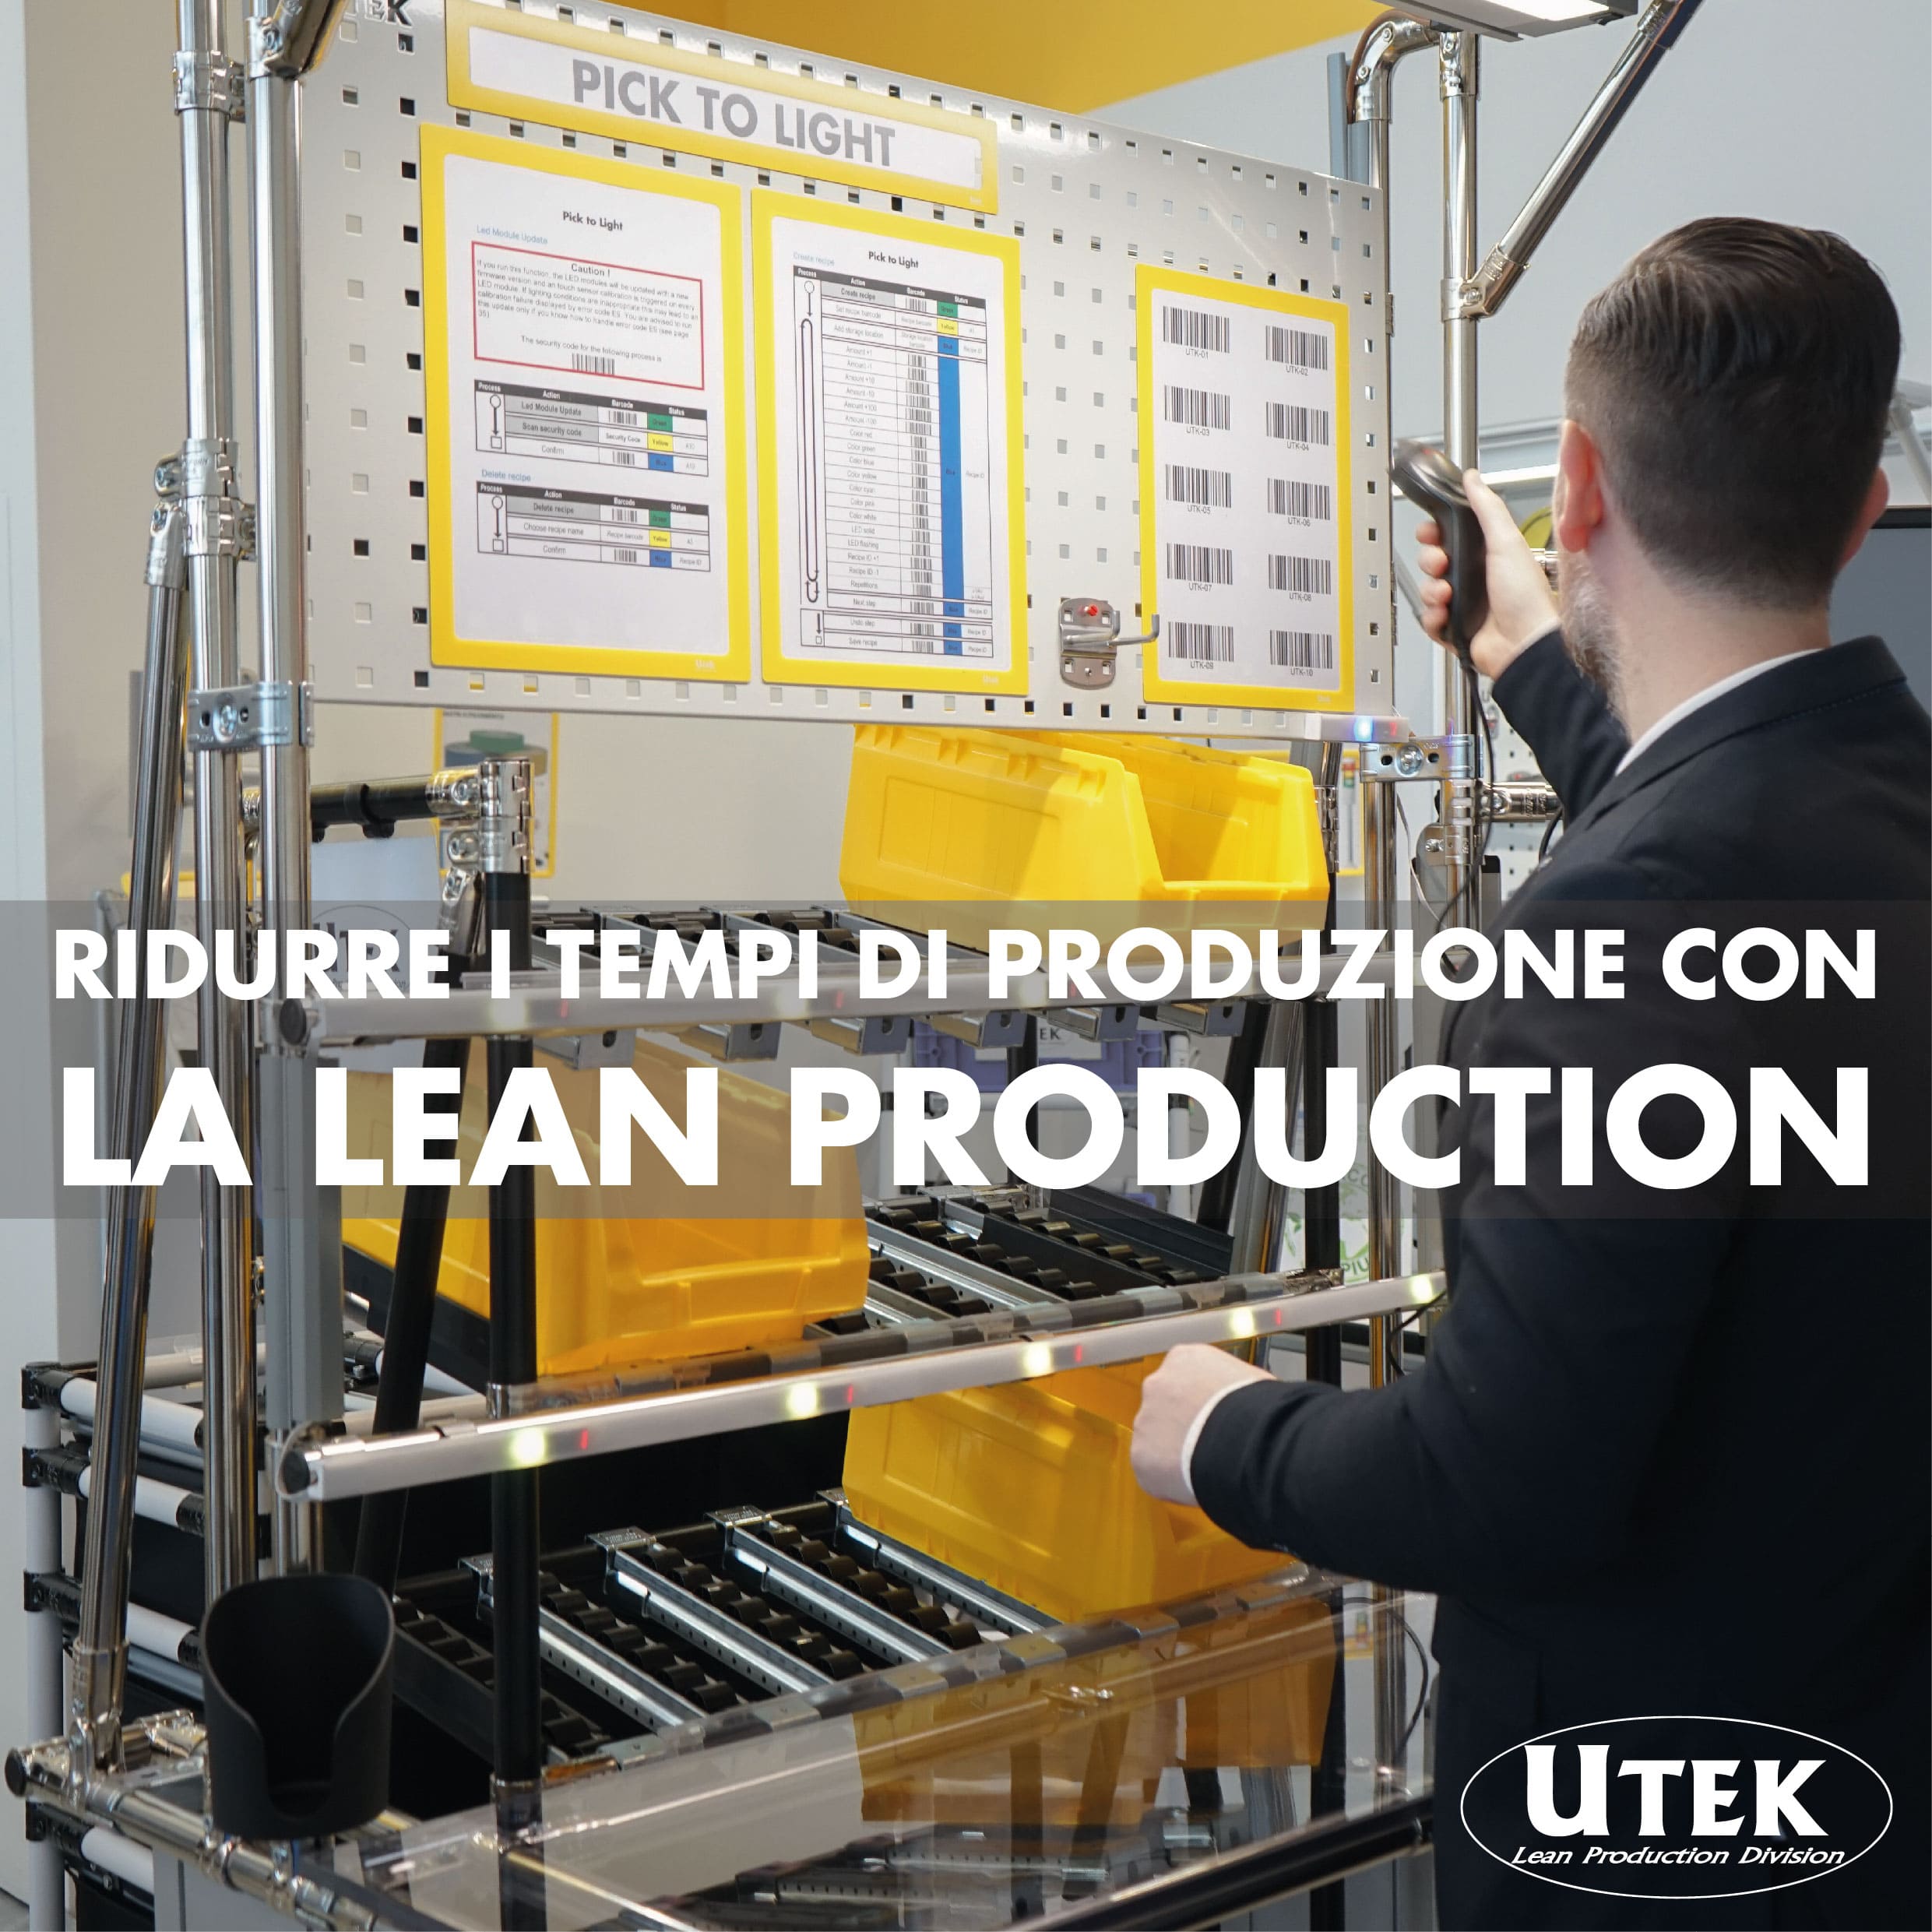 Ridurre i tempi di produzione e aumentare la qualità con la Lean Production